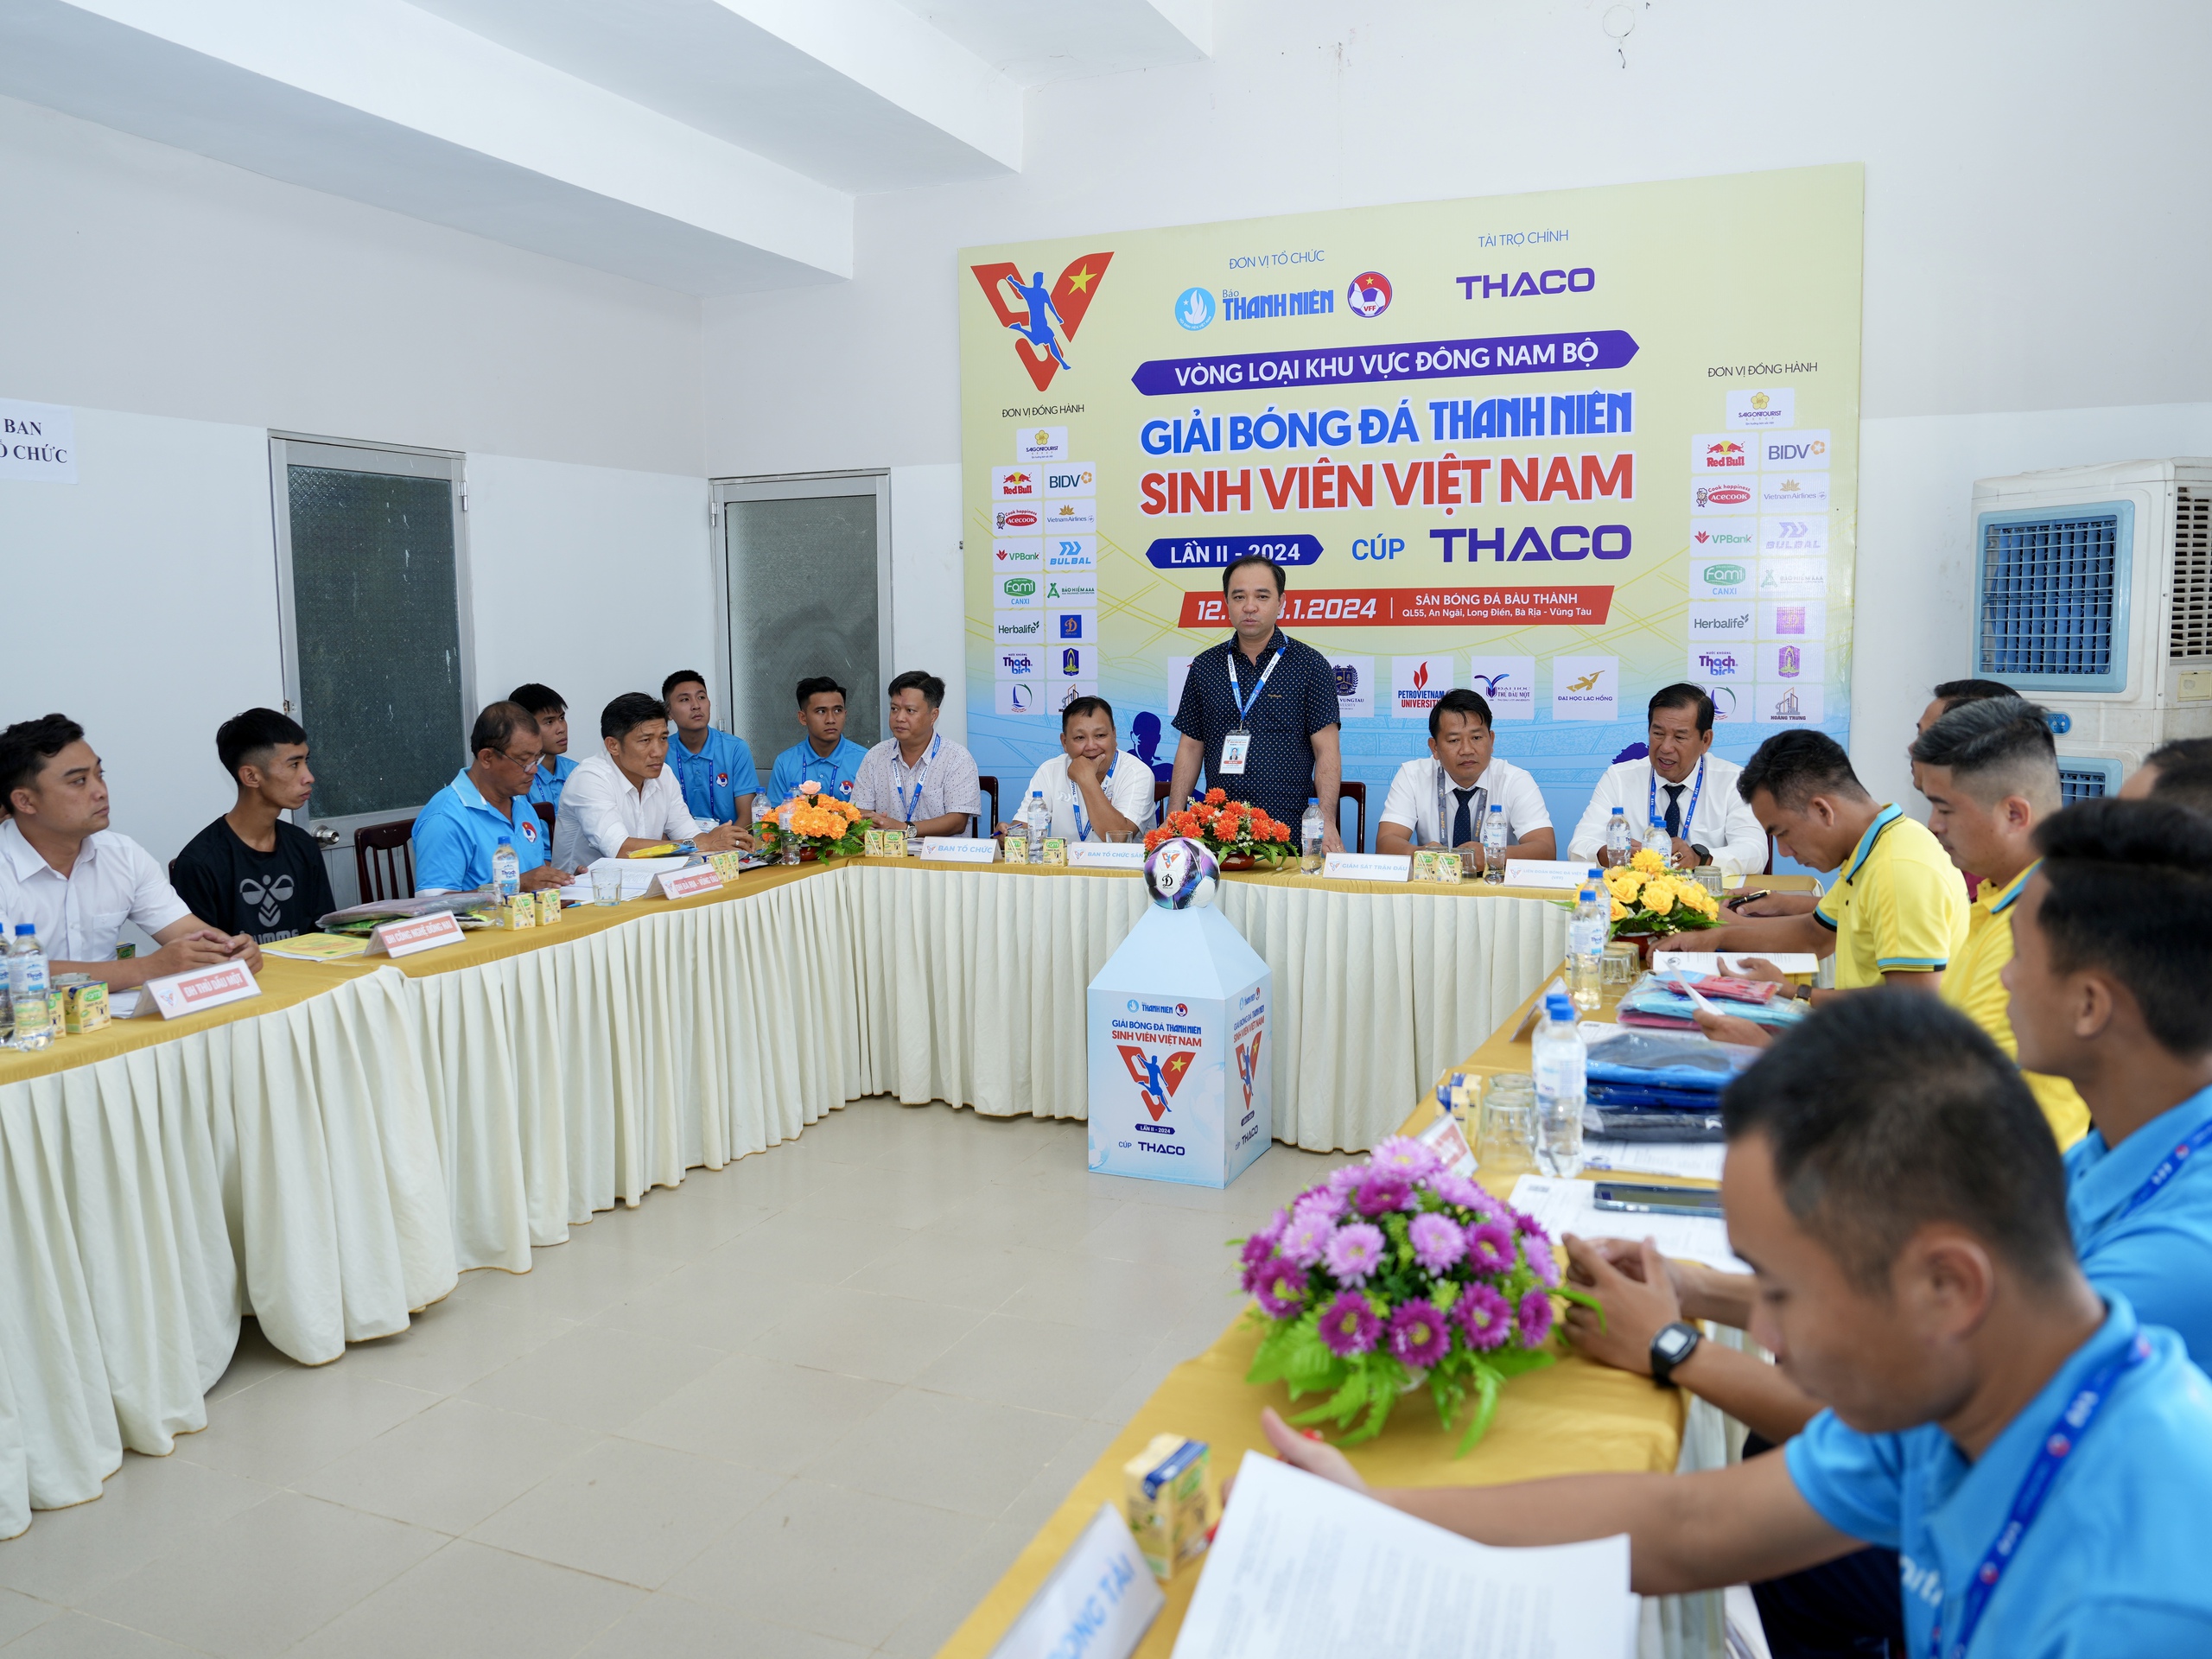 Phó Chủ tịch UBND huyện Long Điền, ông Lê Hữu Hiền chào đón 6 đội bóng và các lực lượng đến với vòng loại khu vực Đông Nam bộ tại sân Bàu Thành